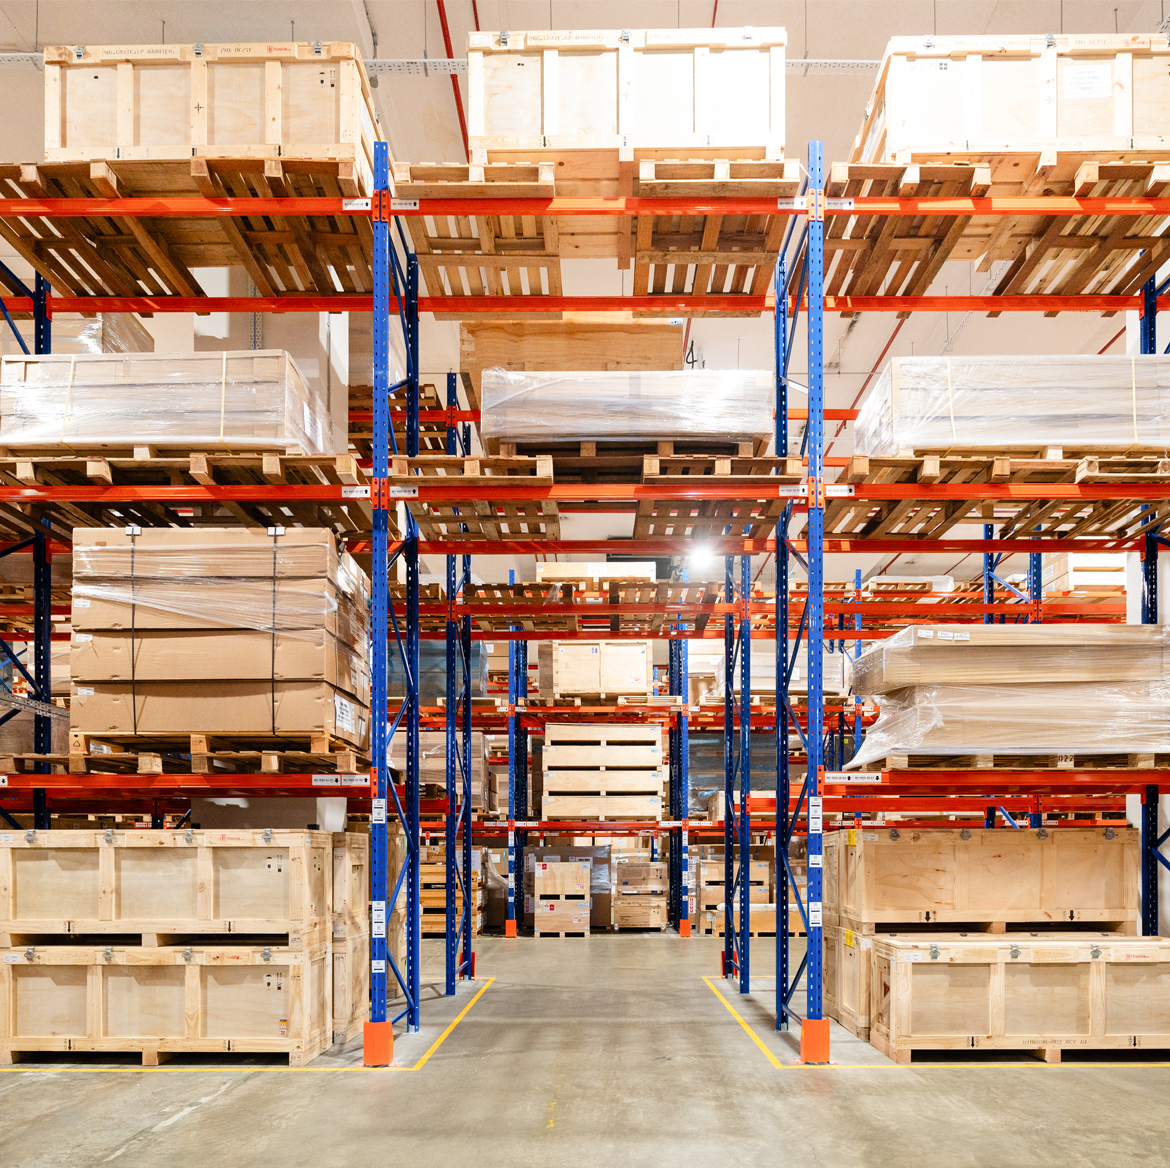 一個裝滿棧板貨物的鴻霖倉庫，用於儲存並管理貨物。